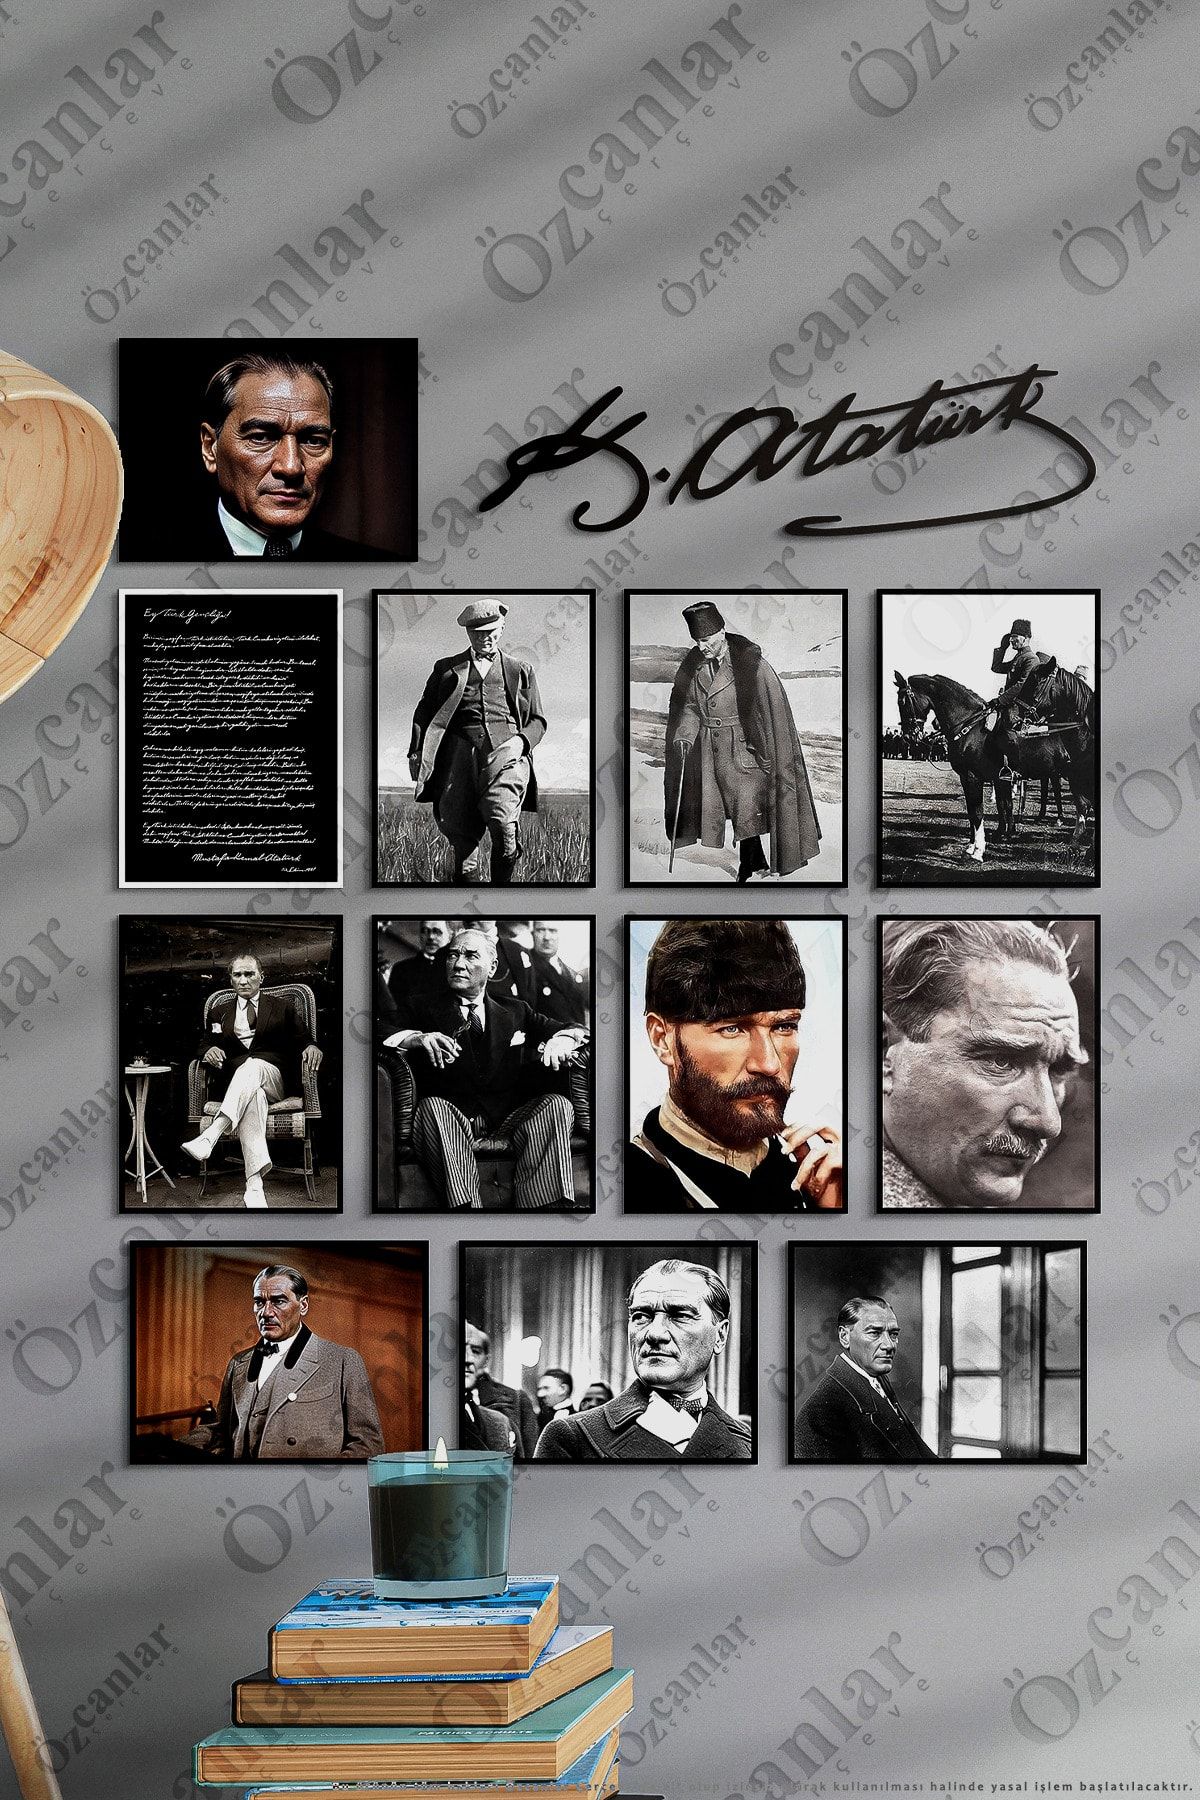 ÖZCANLAR ÇERÇEVE Atatürk Çerçevesiz Çerçeve Görünümlü Atatürk Fotoğrafları 13 Parça Mdf Tablo Seti Atatürk Imzası